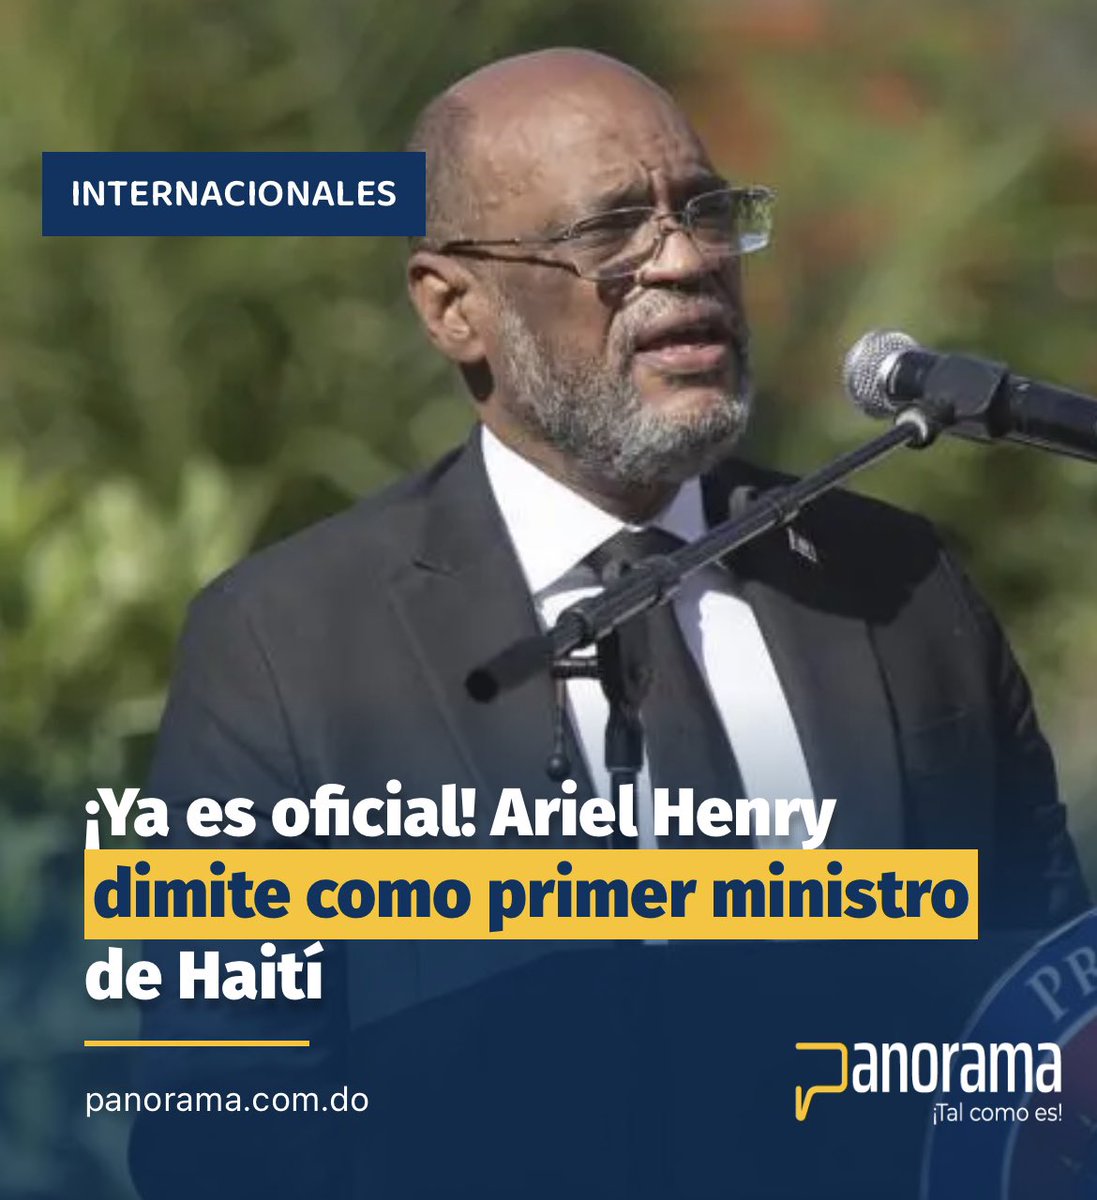 #Panorama_Internacional

Ariel Henry presentó oficialmente su renuncia como Primer Ministro de Haití a través de una carta emitida desde Los Ángeles, Estados Unidos. 

Detalles: panorama.com.do/ya-es-oficial-…

Síguenos, comenta y comparte. 

#Panorama #ArielHenry #Haiti #PuertoPrincipe…